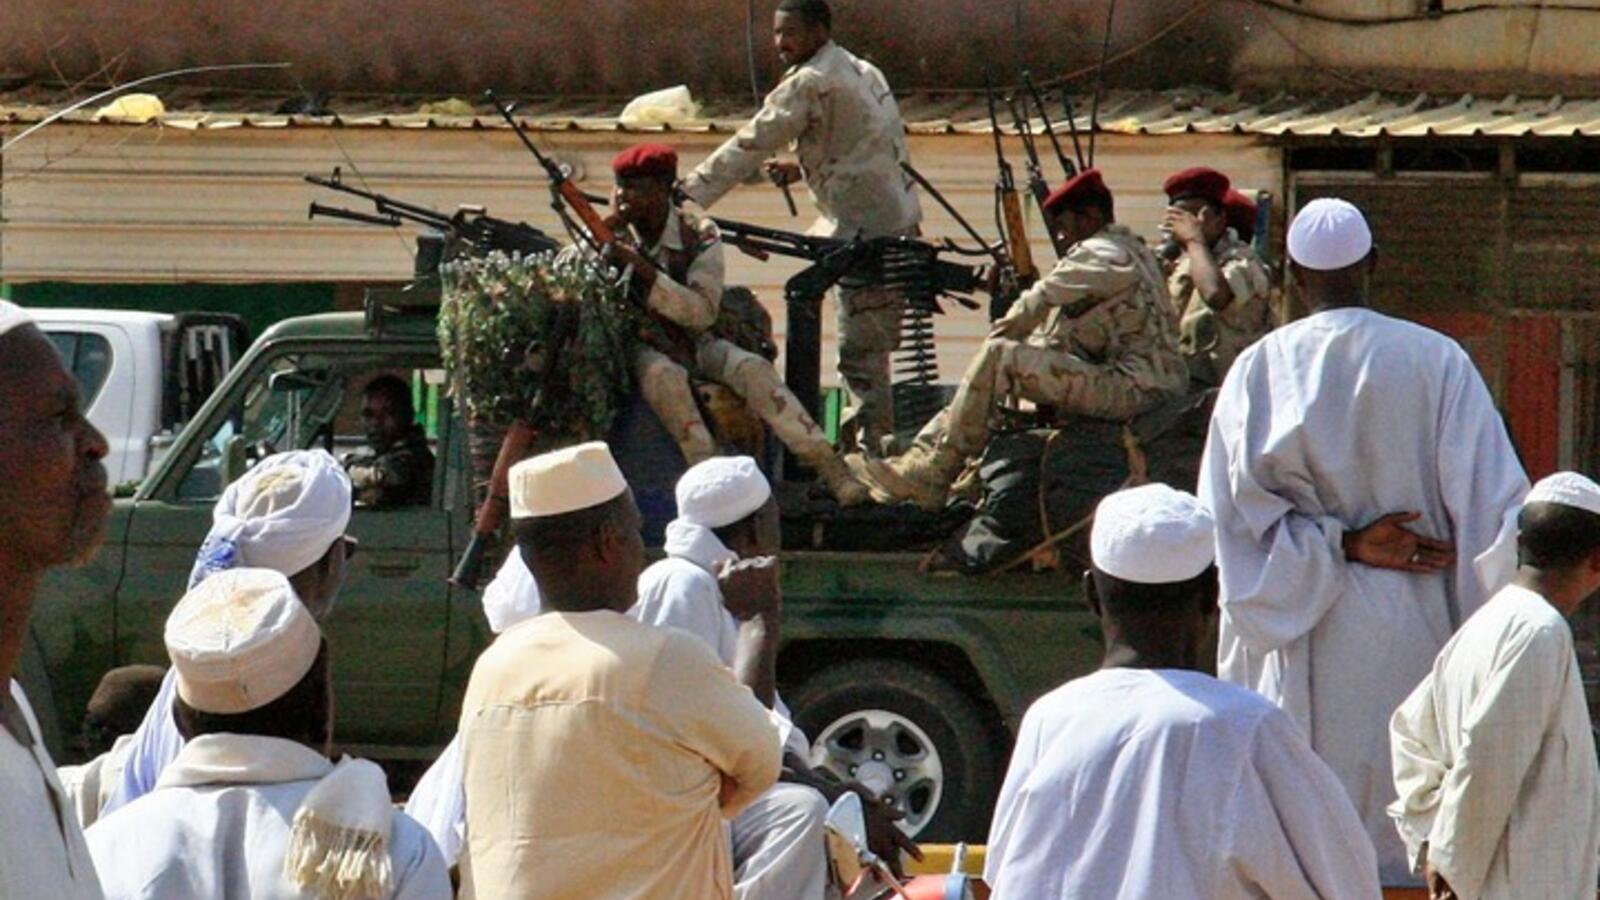 السودان: توقيف 122 “مرتزقا” كانوا في طريقهم للقتال بليبيا